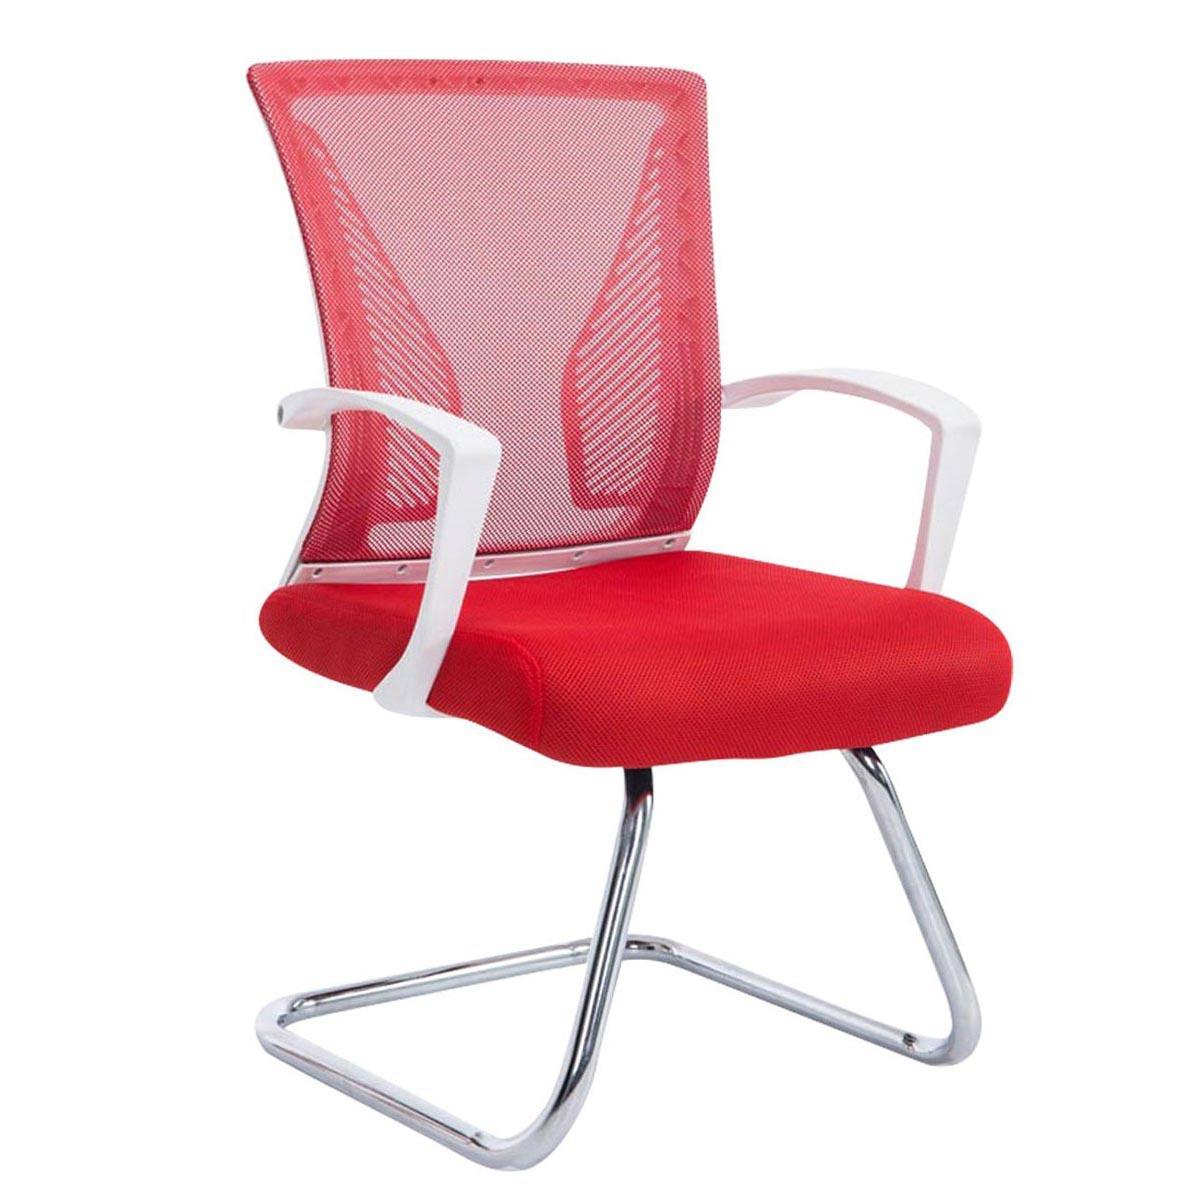 Cadeira de Visita CUBA V, Estrutura Metálica, Malha Respirável, Cor Vermelho